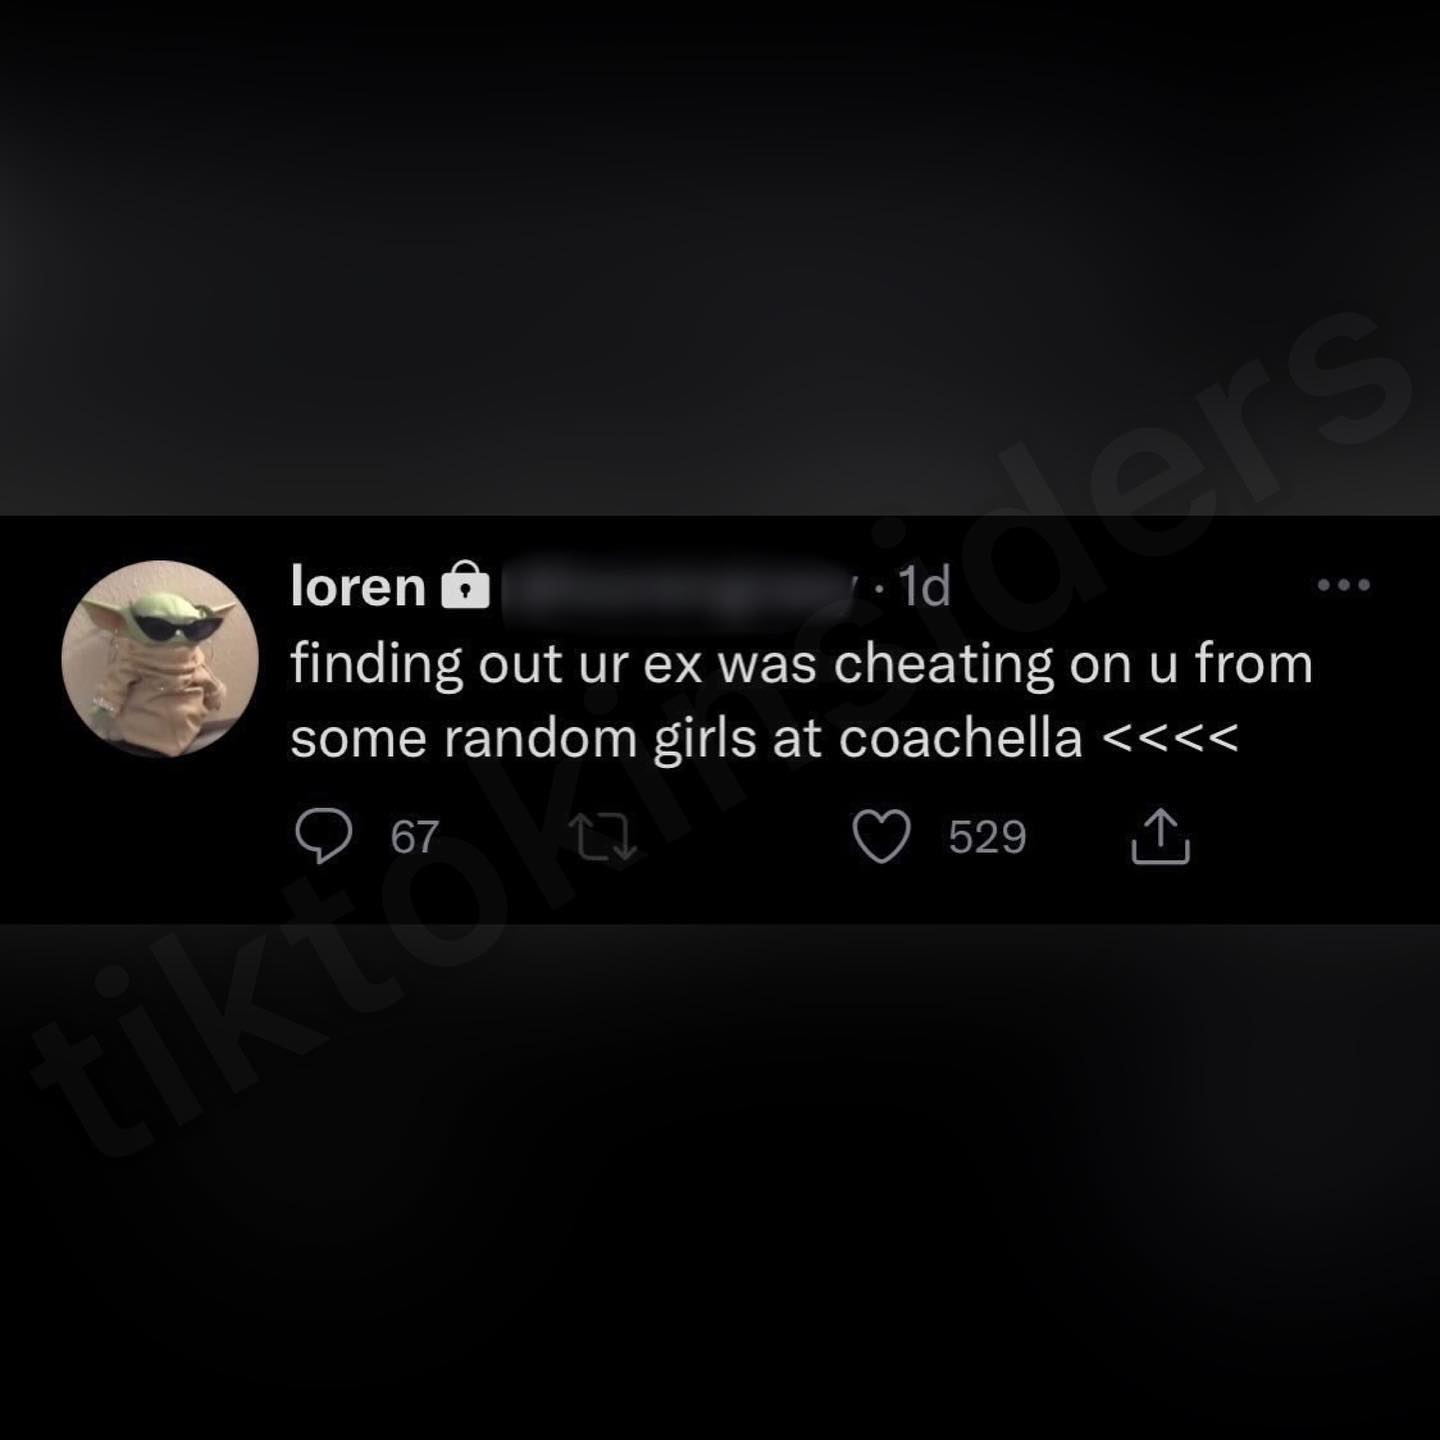 Loren Gray's private tweet about her ex-boyfriend cheating on her